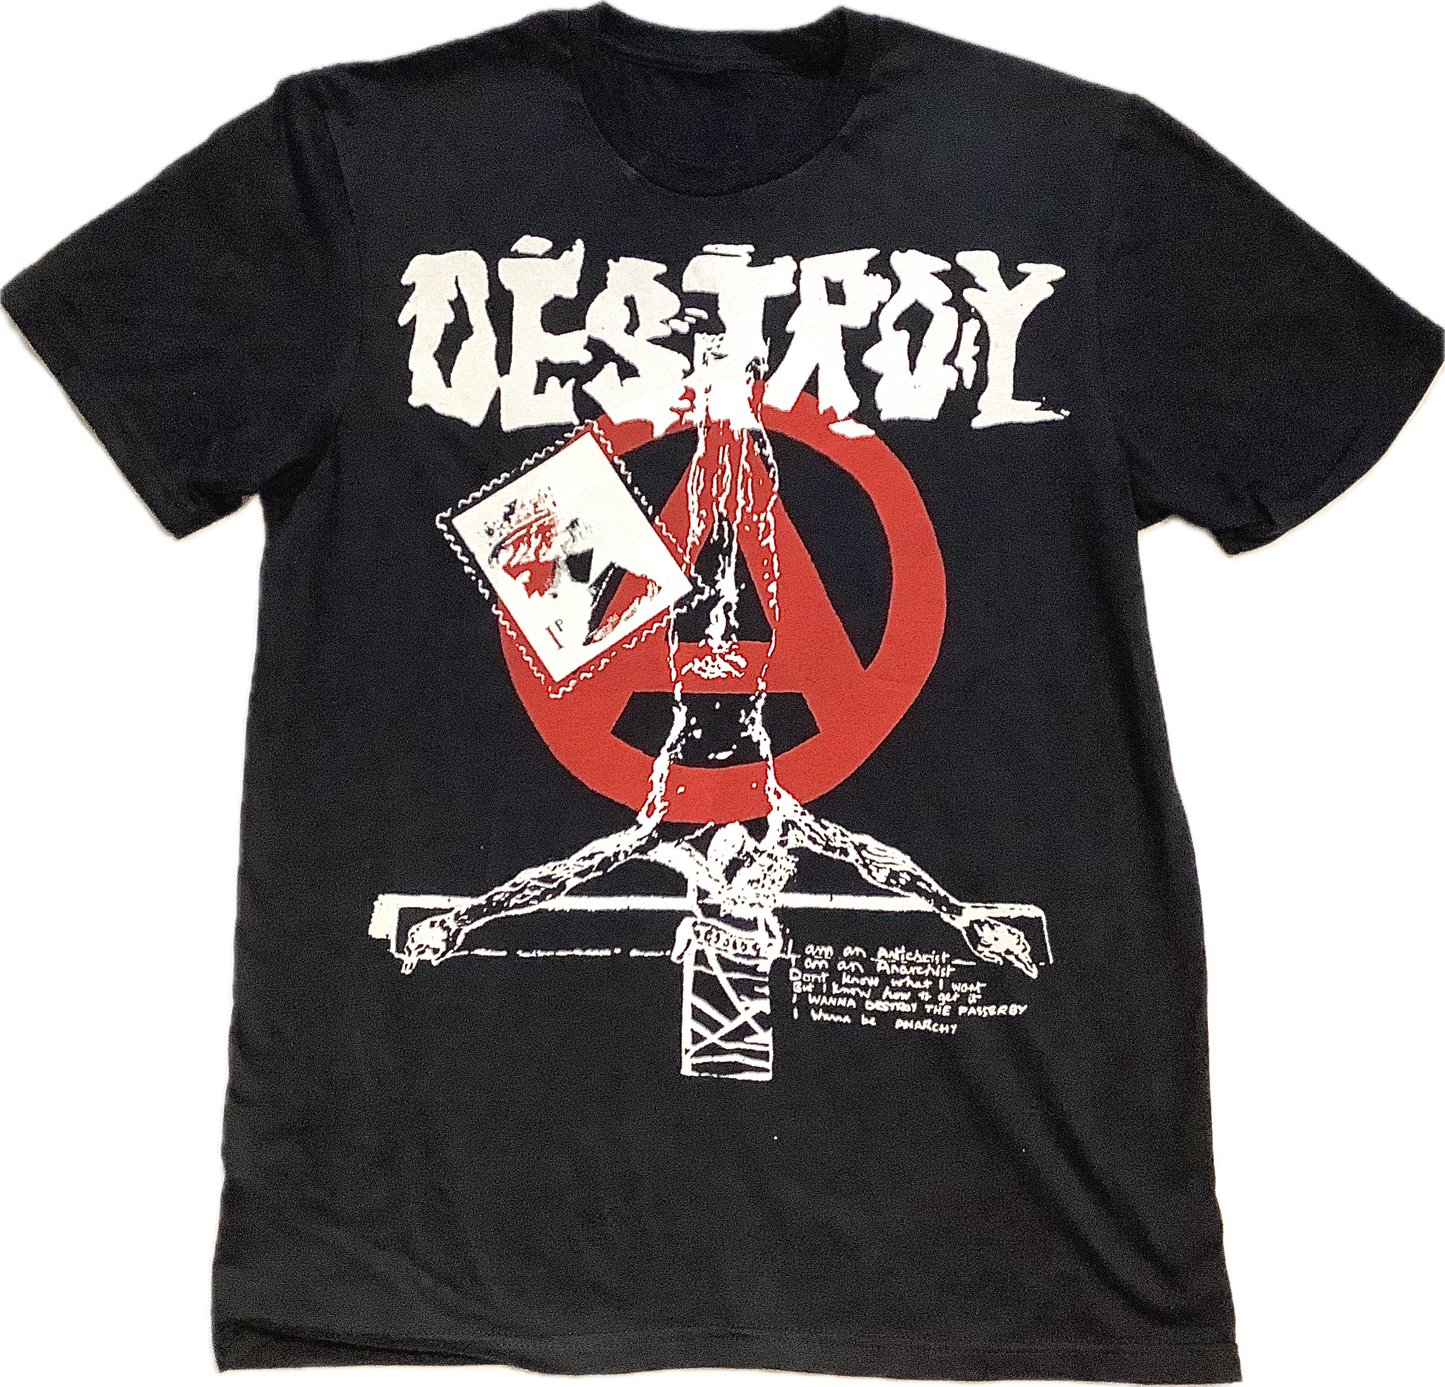 Destroy Anarchy A Black t-shirt